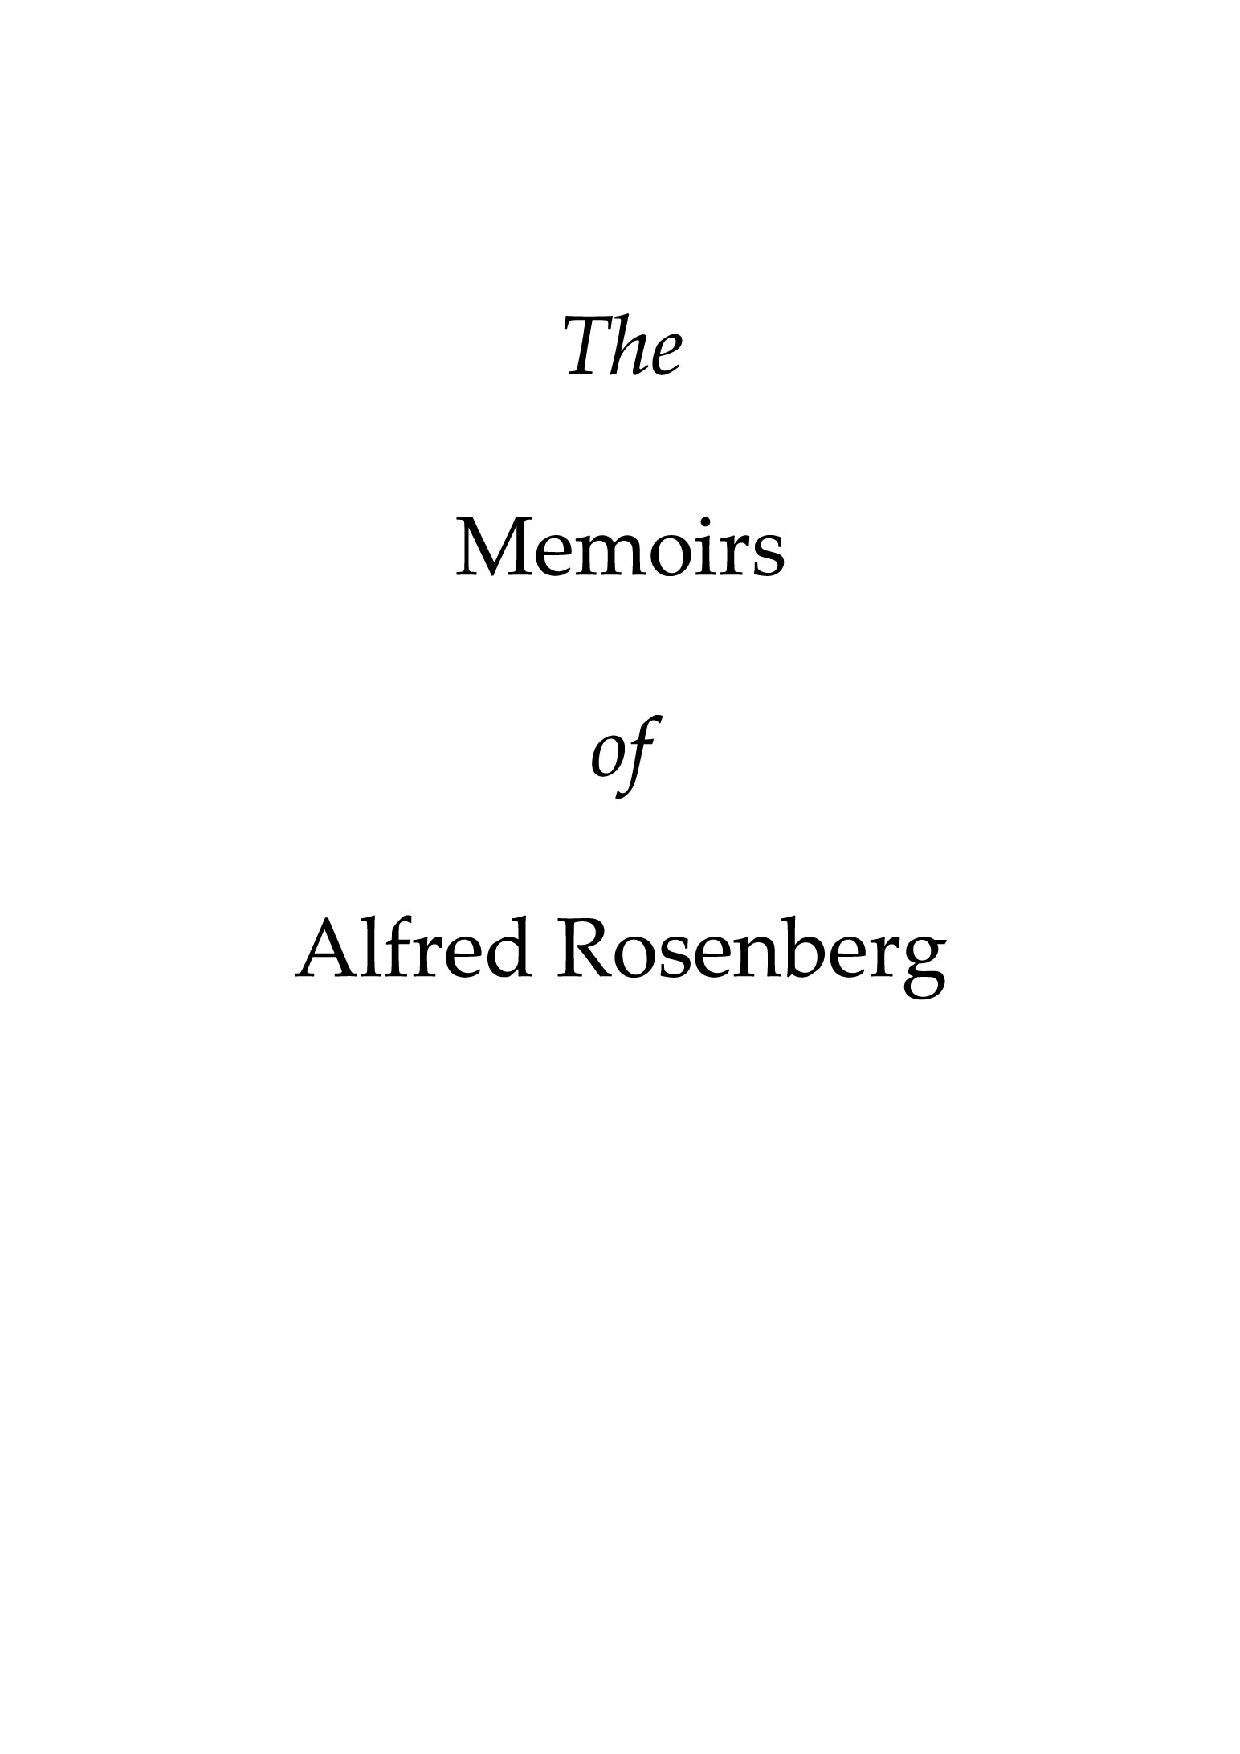 Alfred Rosenberg's "Memoirs"